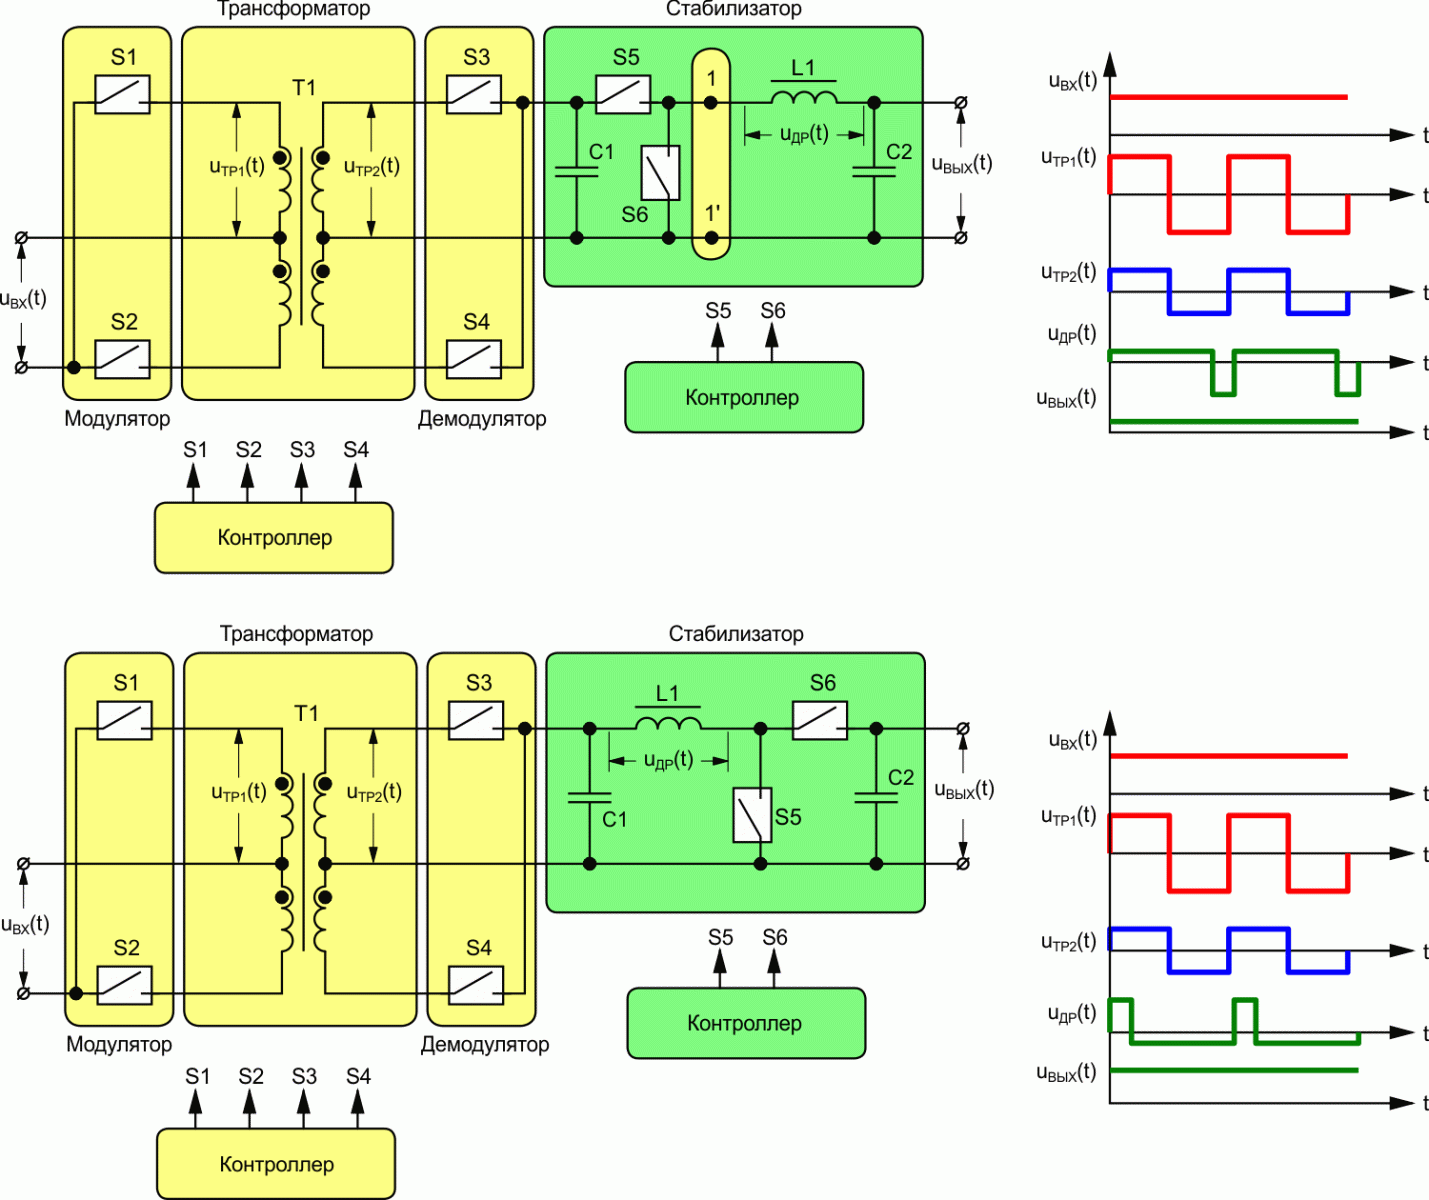  Схемы преобразователей на основе трансформатора с импульсными стабилизаторами понижающего (вверху) и повышающего (внизу) типов.